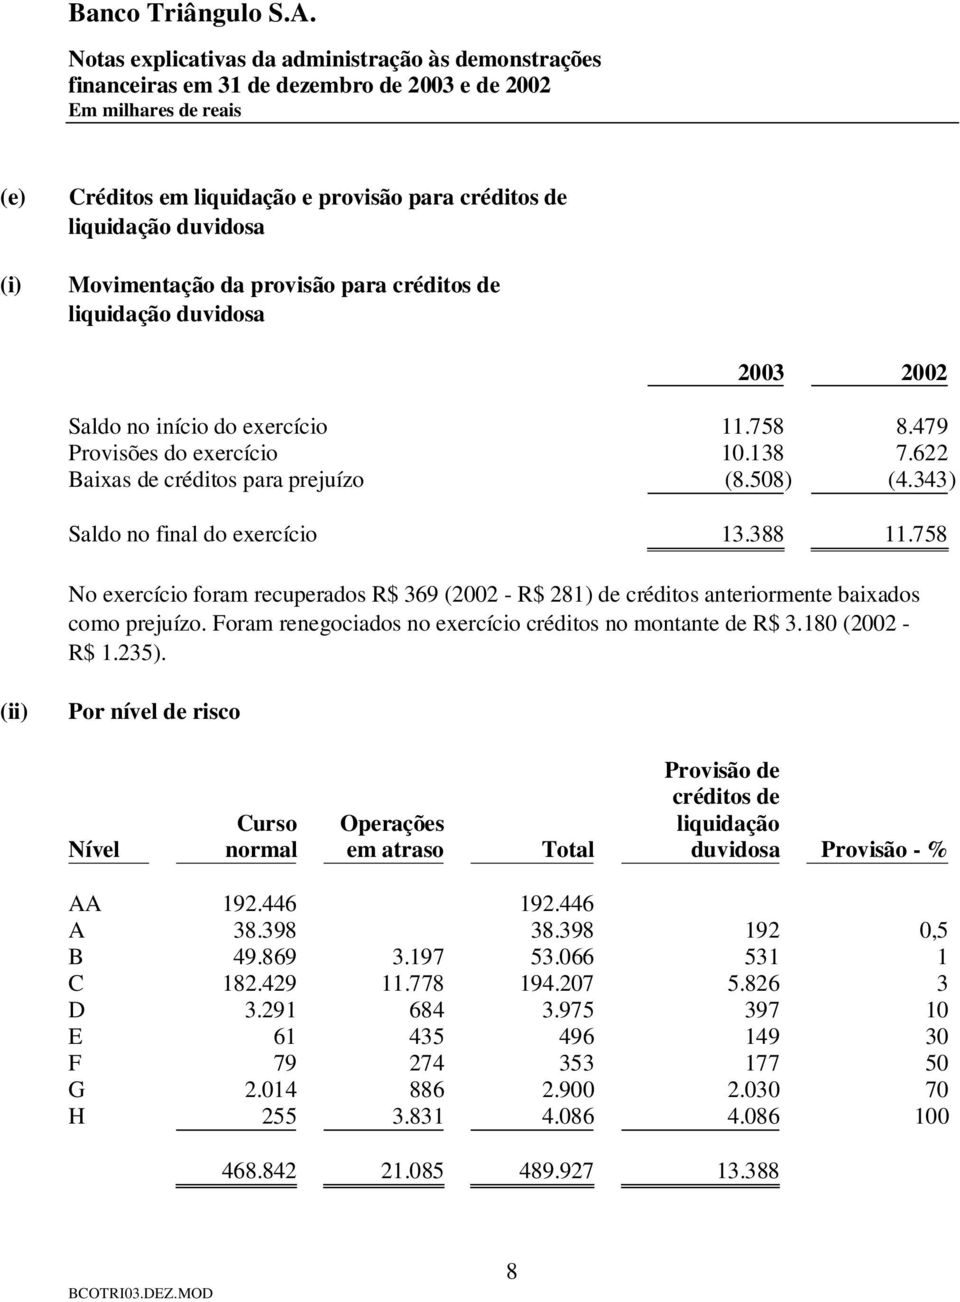 758 No exercício foram recuperados R$ 369 (2002 - R$ 281) de créditos anteriormente baixados como prejuízo. Foram renegociados no exercício créditos no montante de R$ 3.180 (2002 - R$ 1.235).